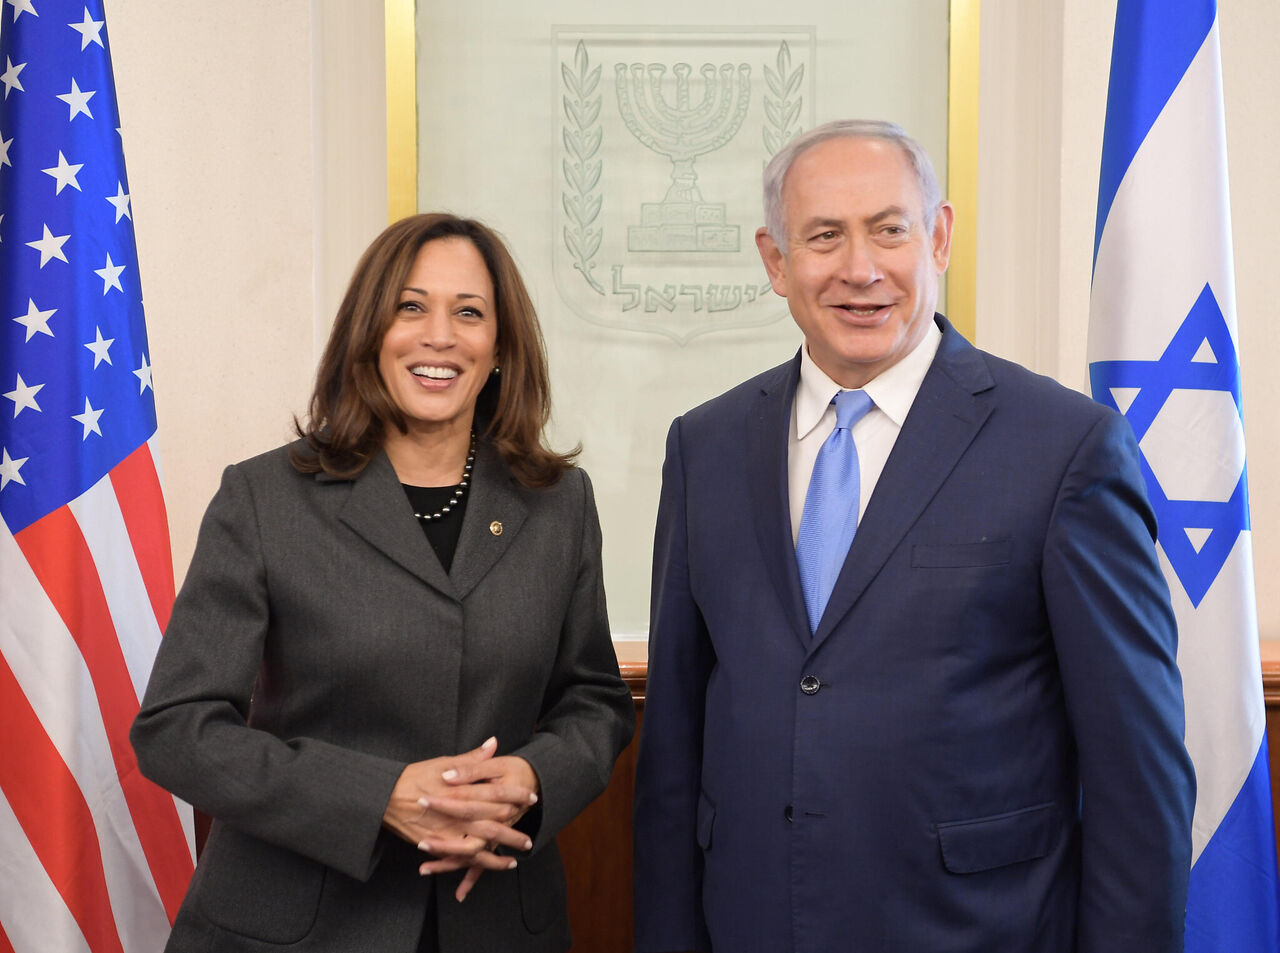 Pour sa première rencontre avec un responsable étranger, la candidate Harris reçoit Netanyahou